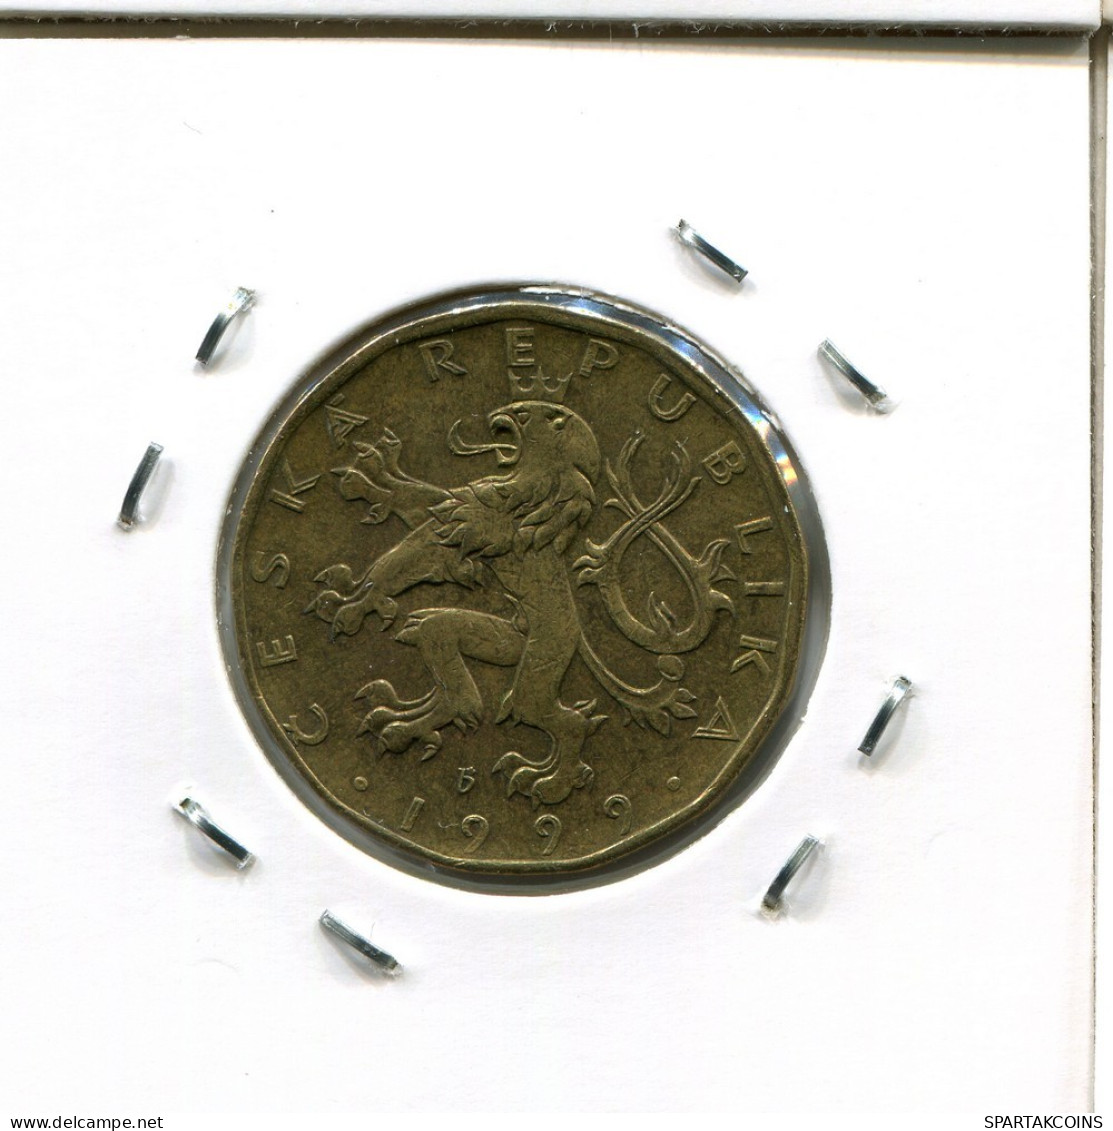 20 KORUN 1999 CZECH REPUBLIC Coin #AP786.2.U.A - Tschechische Rep.